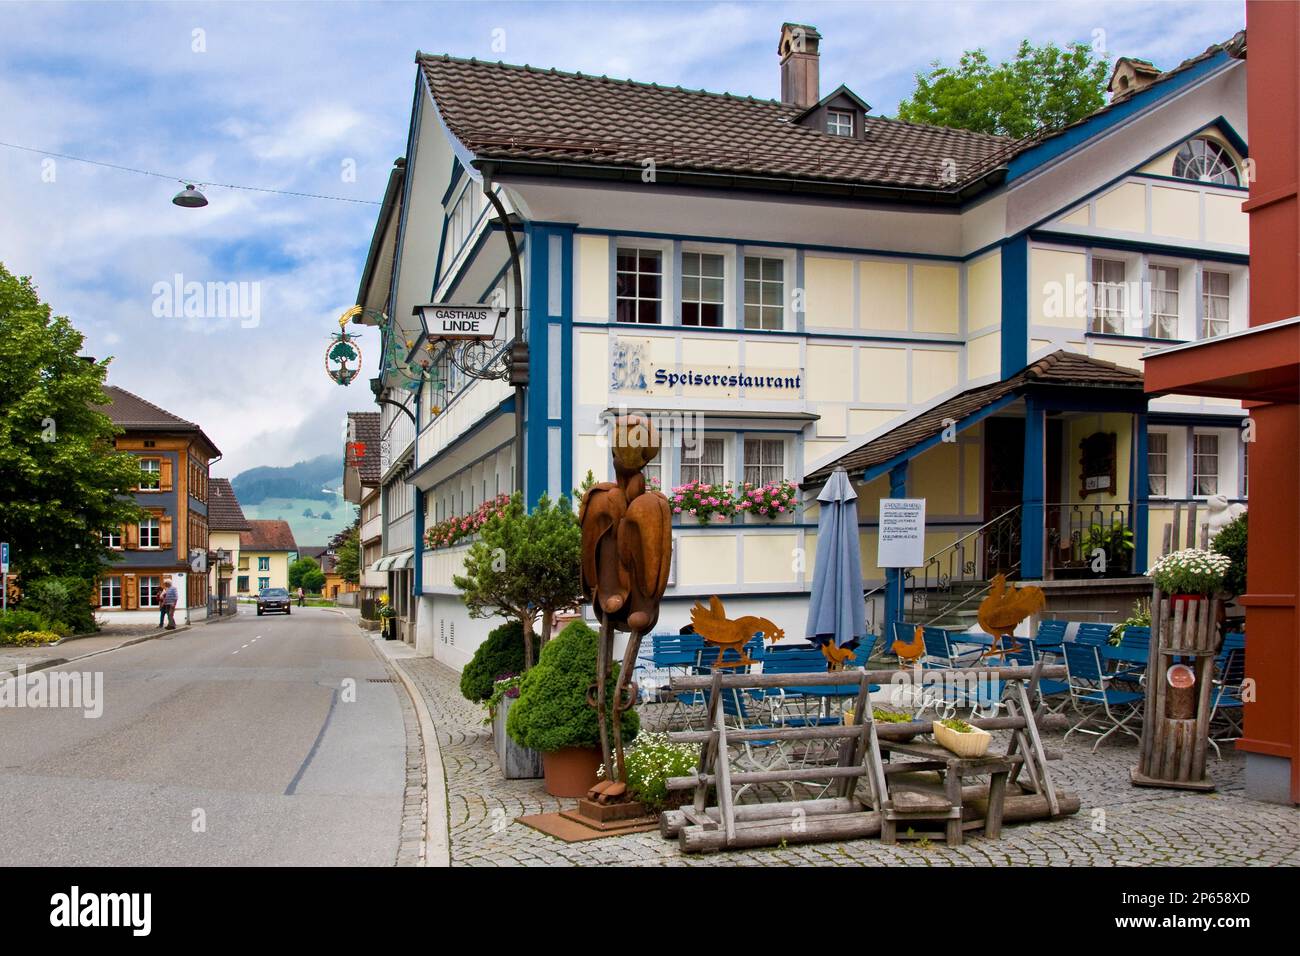 Restaurant Linde, Appenzell, Switzerland Stock Photo